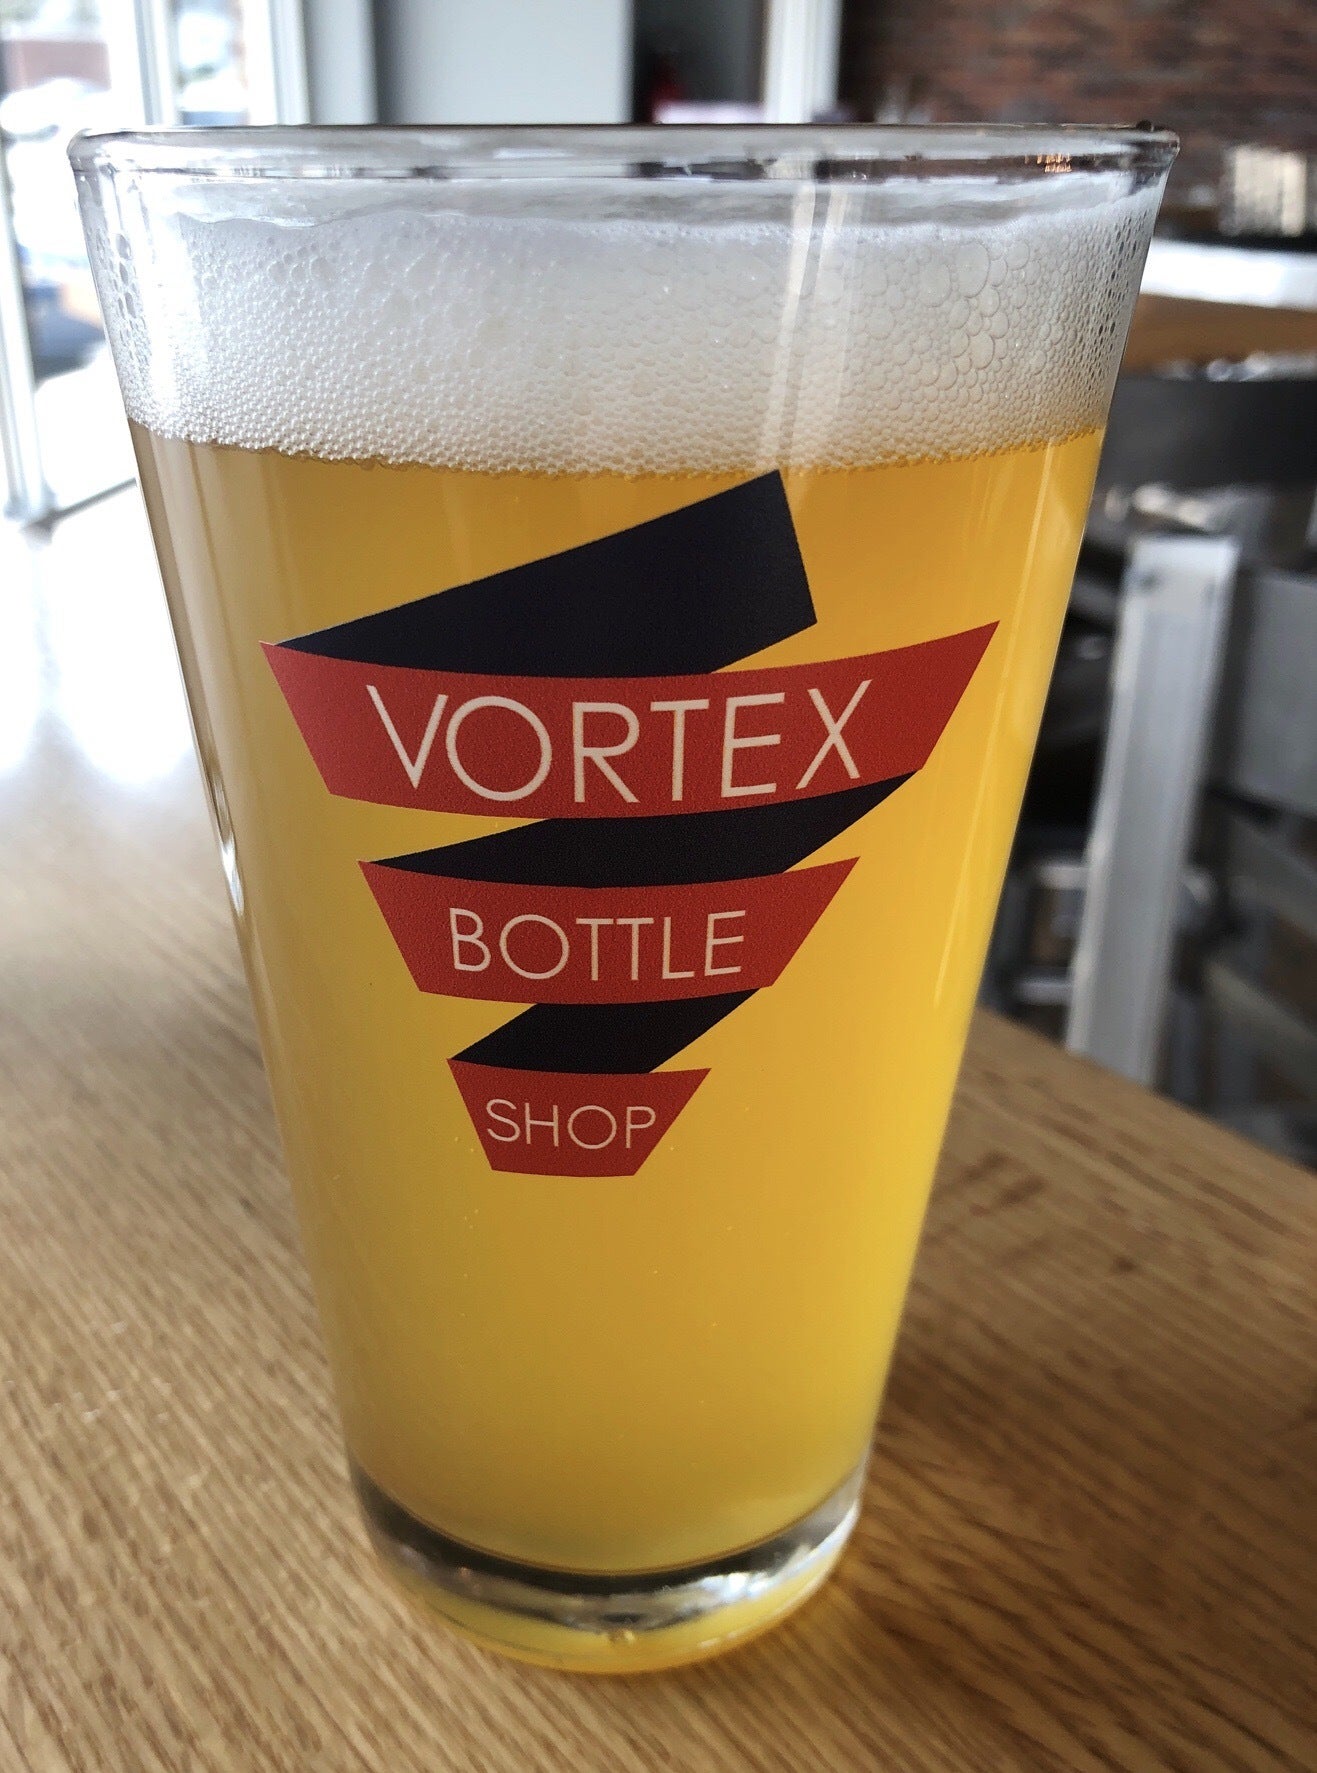 Vortex Bottle Shop